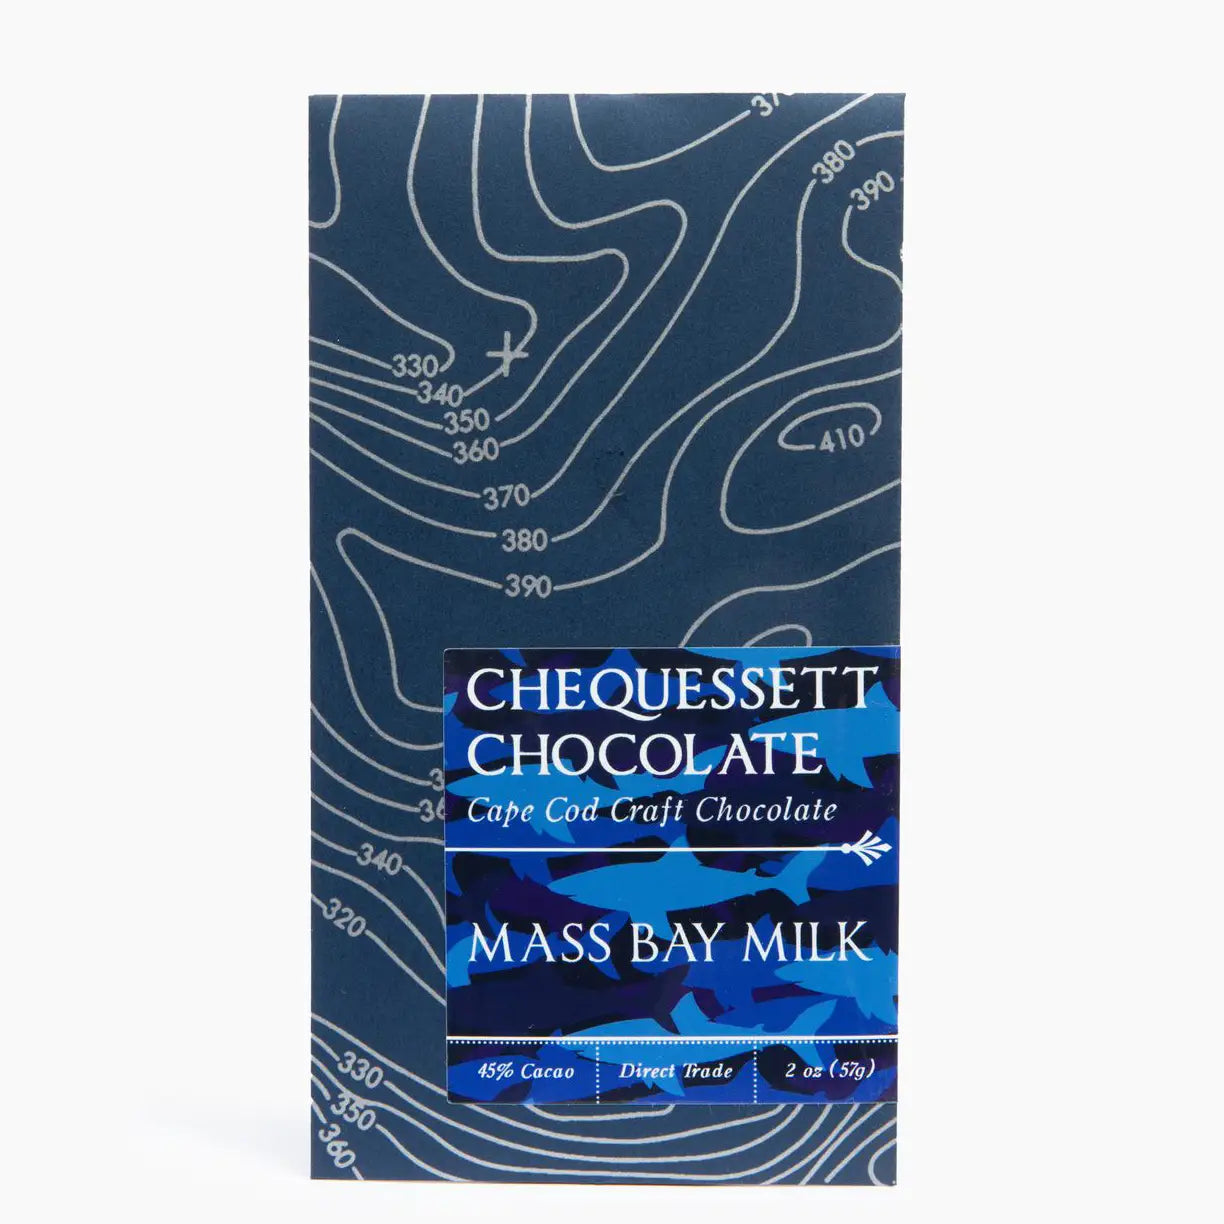 Chequessett Chocolate - Mass Bay Milk